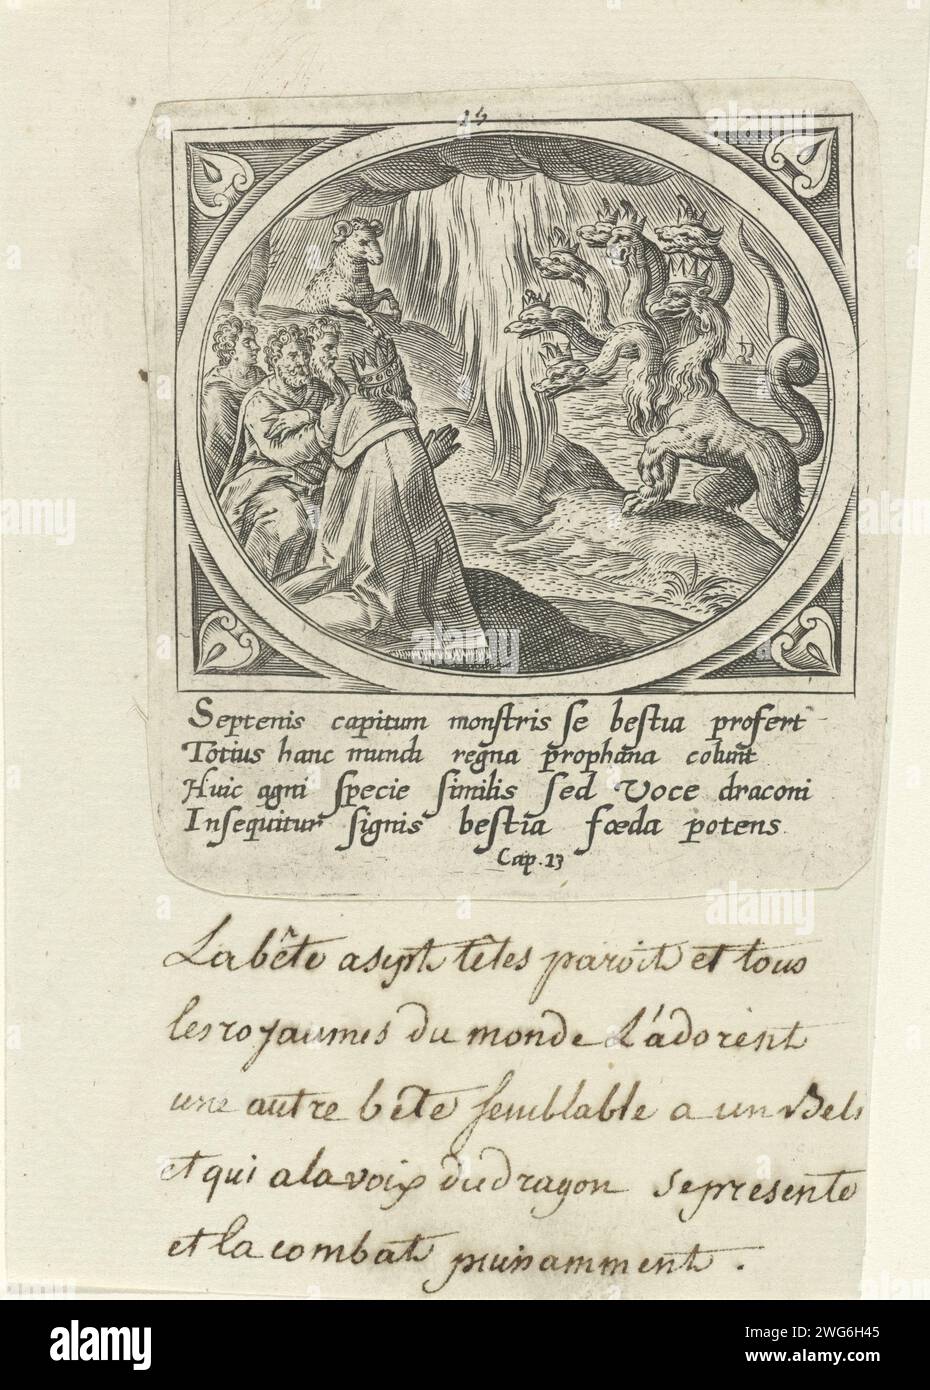 Culte de la bête à sept membres, Adriaen Collaert (attribué à), après Jan Snellinck (i), 1585 impression de la mer vient la bête couronnée à sept pièces qui est honorée par le peuple. Derrière une montagne, la deuxième bête apparaît sous la forme d'un bélier. Dans la marge, une légende de quatre lignes en latin. Quinzième tirage d'une série de vingt-quatre avec la révélation de Johannes sur Patmos. Papier Anvers gravure de la bête en forme de léopard avec sept têtes sort de la mer et est vénérée avec le dragon Banque D'Images